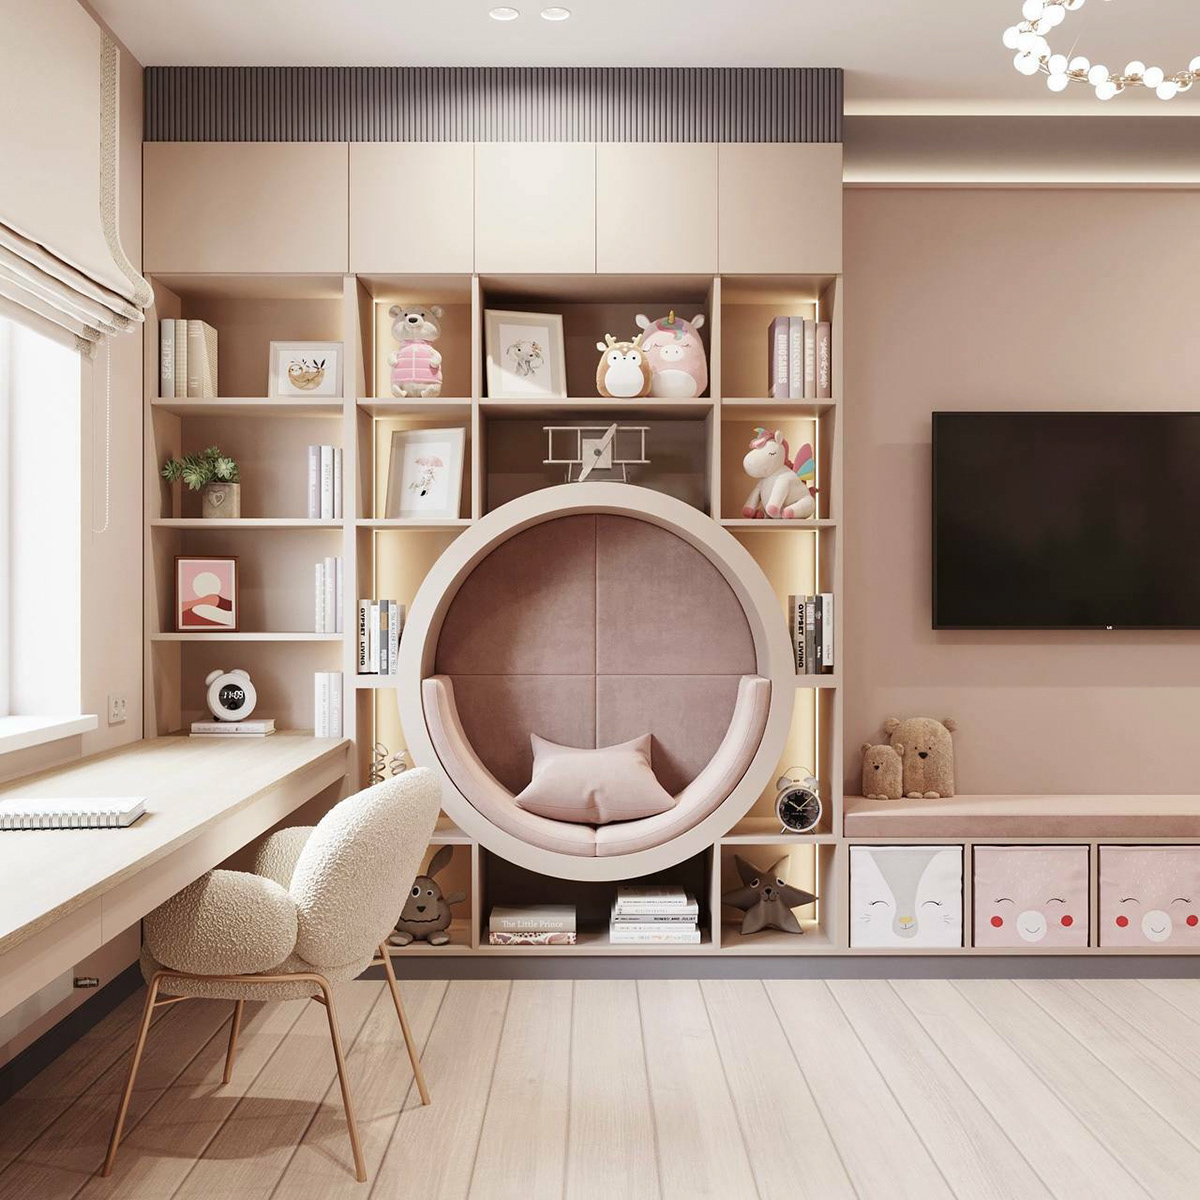 дизайн интерьера интерьер спальня детская ванная interior design  visualization modern 3D pink